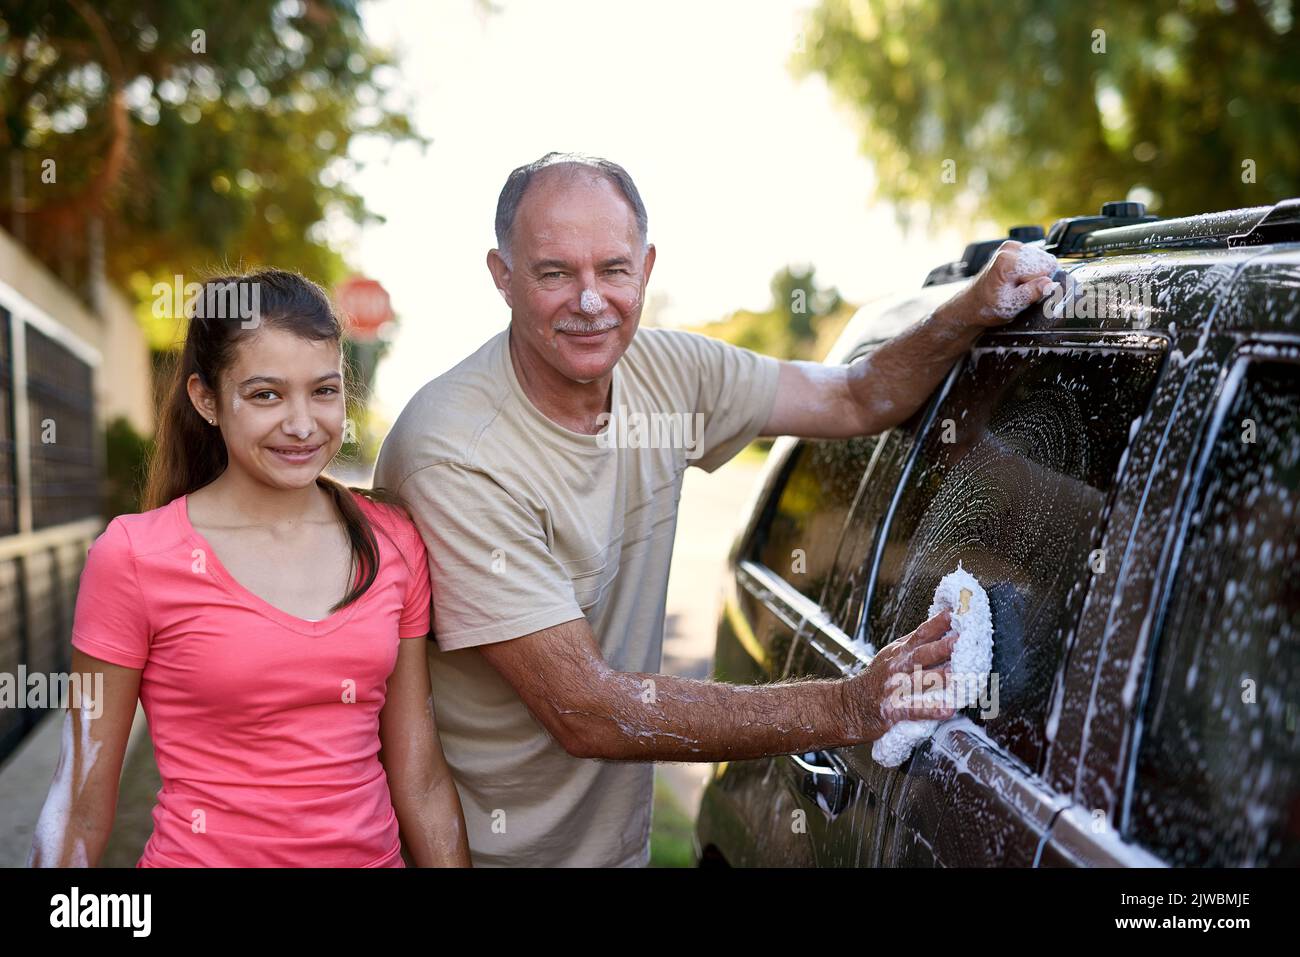 La voiture sera à nouveau flambant neuve lorsque vous aurez terminé. Portrait d'un père et d'une fille lavant une voiture ensemble à l'extérieur. Banque D'Images